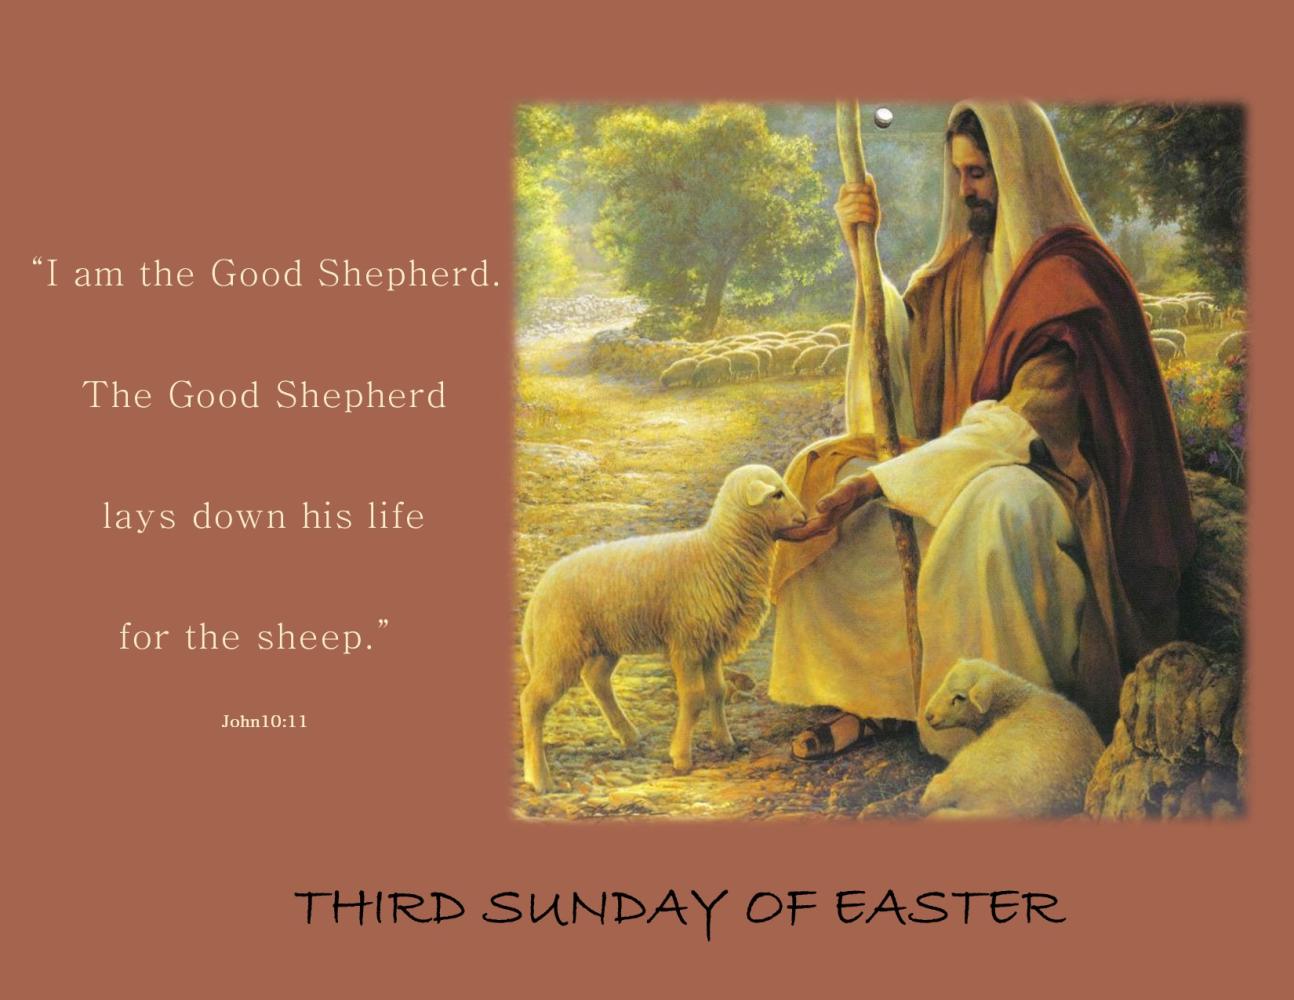 Working with the Good Shepherd